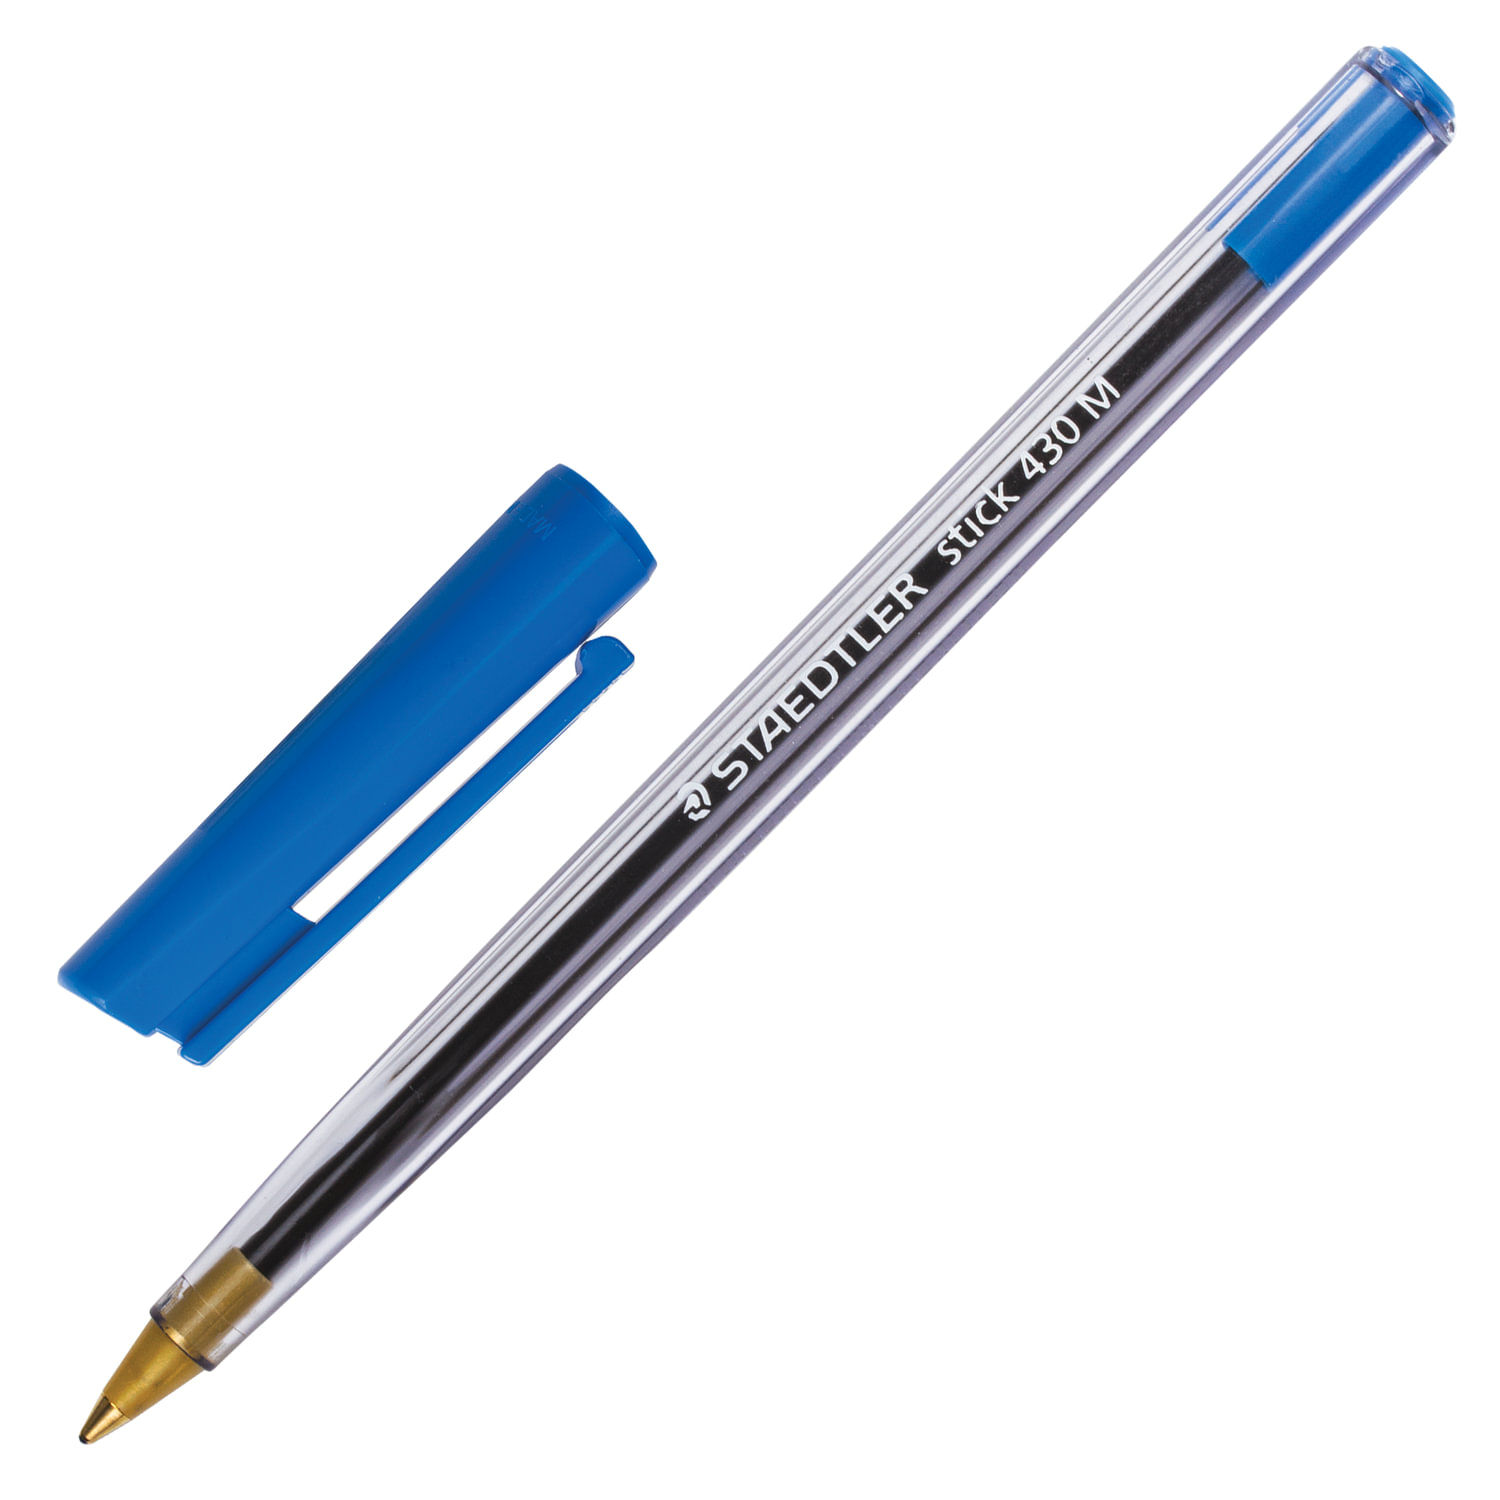 Ручка с прозрачным корпусом. Staedtler Stick 430 m ручка. Ручка шариковая Staedtler Noris Stick. Ручка Staedtler Stick document. Шариковая ручка с колпачком.